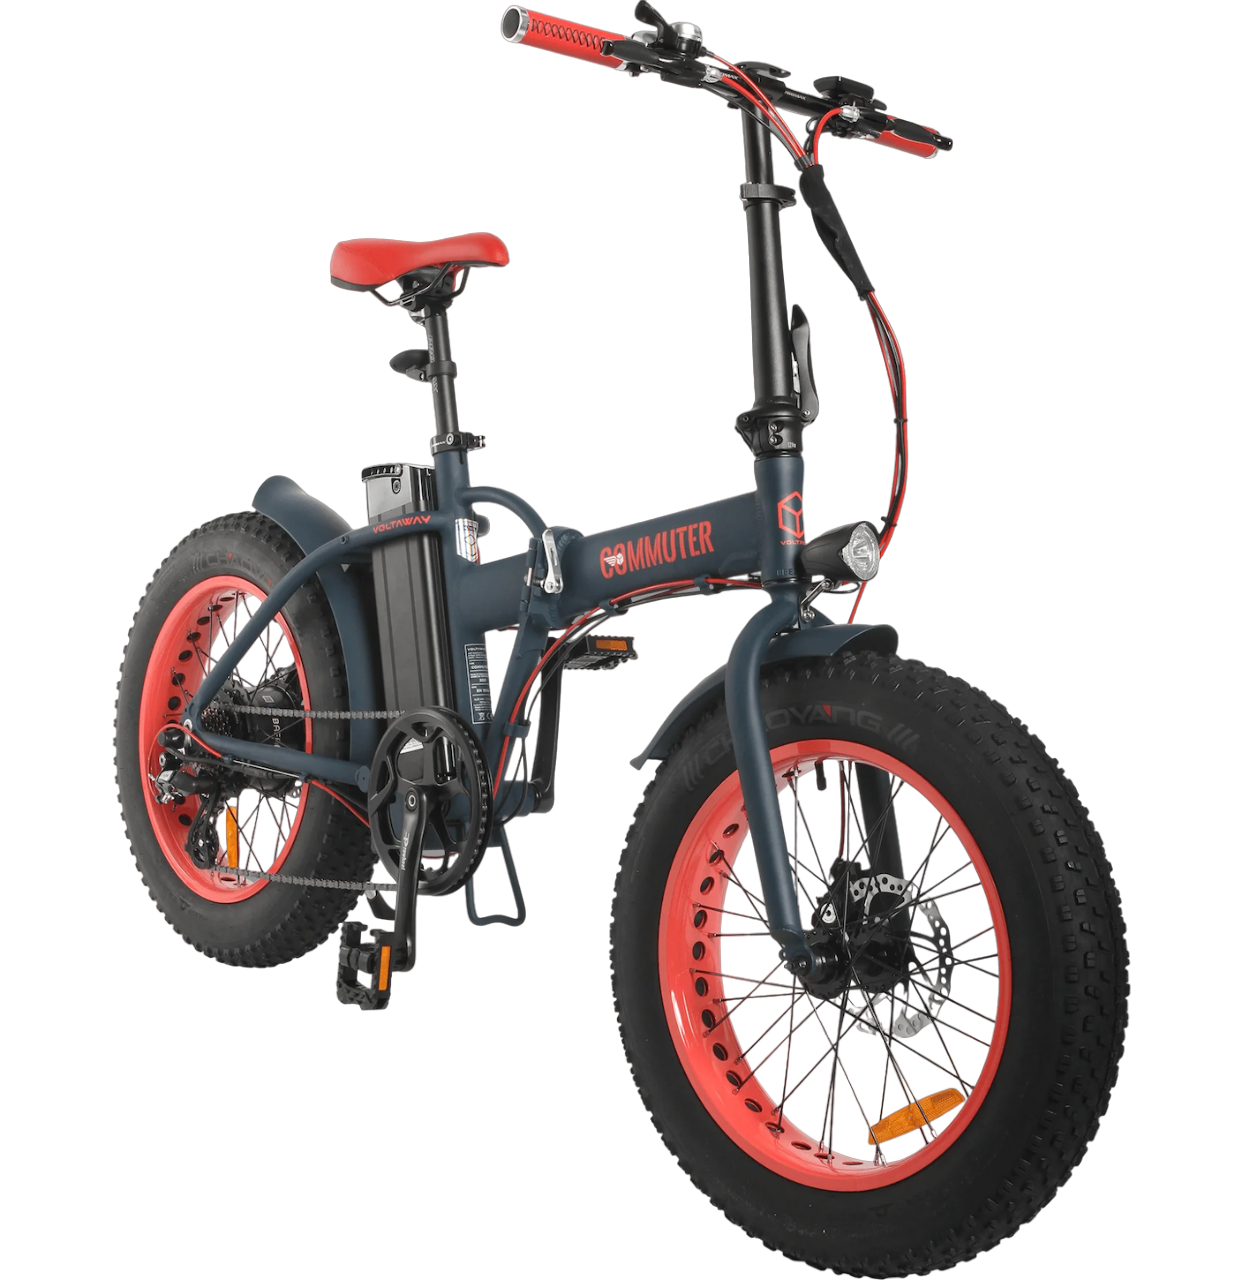 Rood-blauwe-opvouwbare-fatbike-genaamd-voltaway-commuter-met-sportieve-eigenschappen,-gefotografeerd-vanaf-de-voorkant